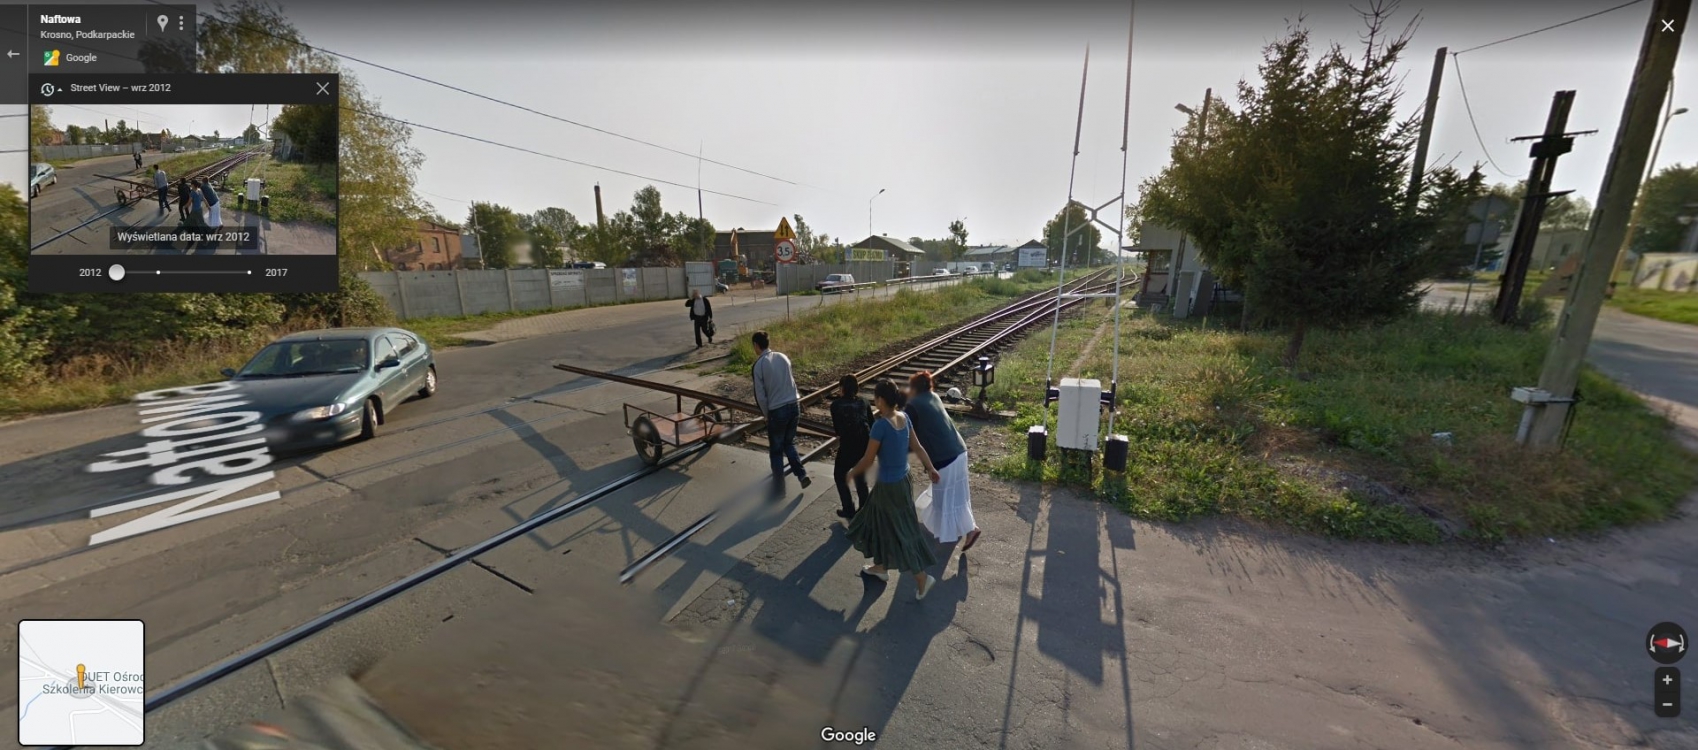 Kradzież torów kolejowych uwieczniona na mapach Google? Te zdjęcia robią furorę w sieci!